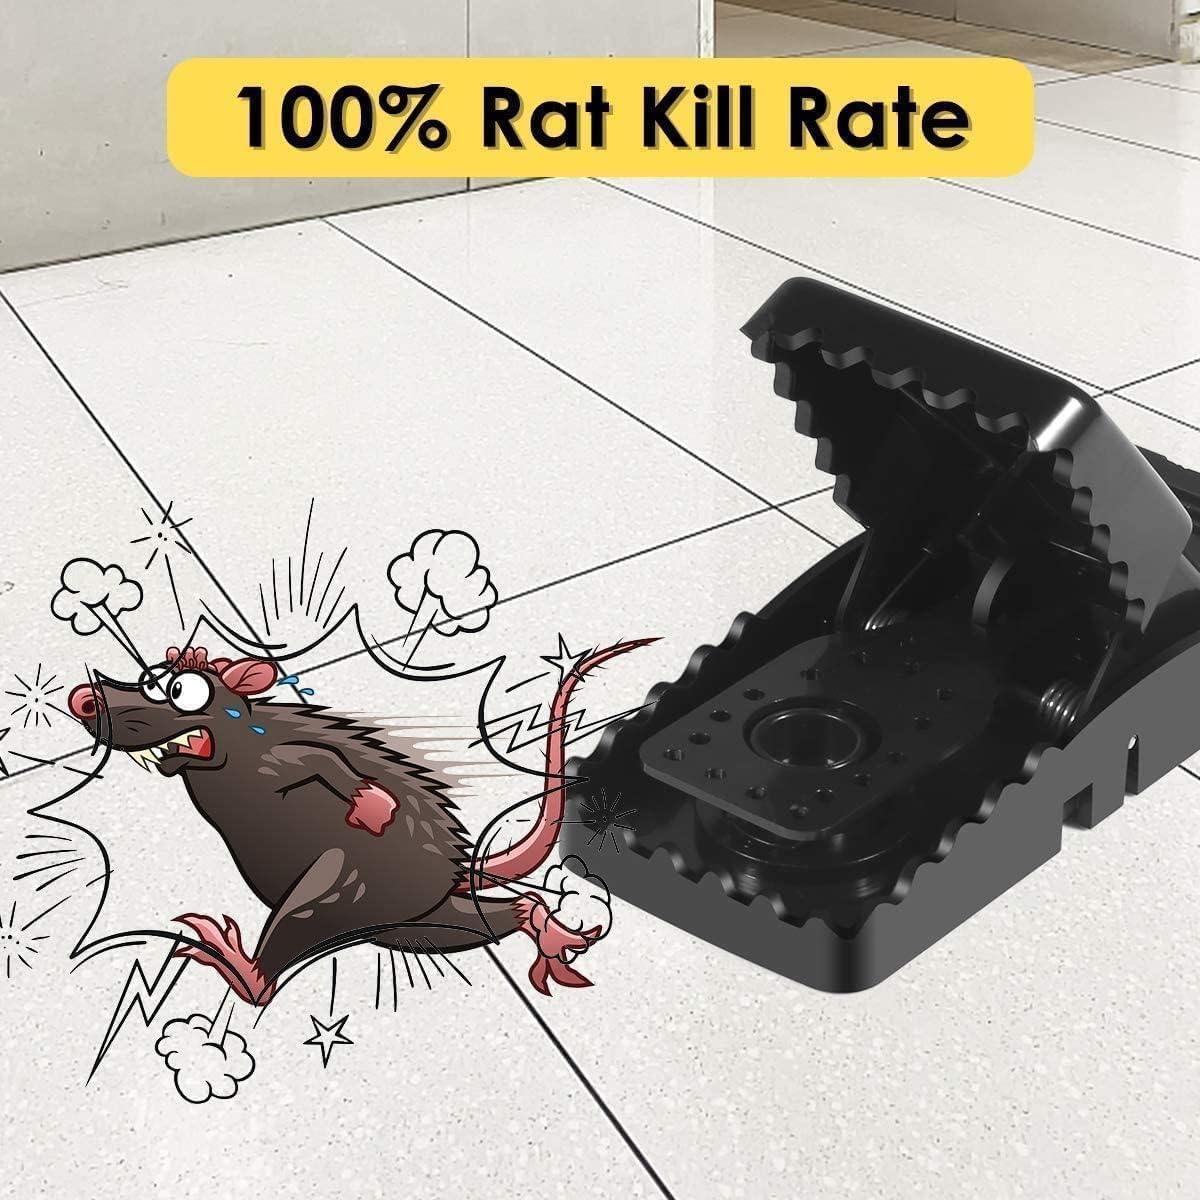 Heavy Duty Plastic Mouse Trap - Gadget 360